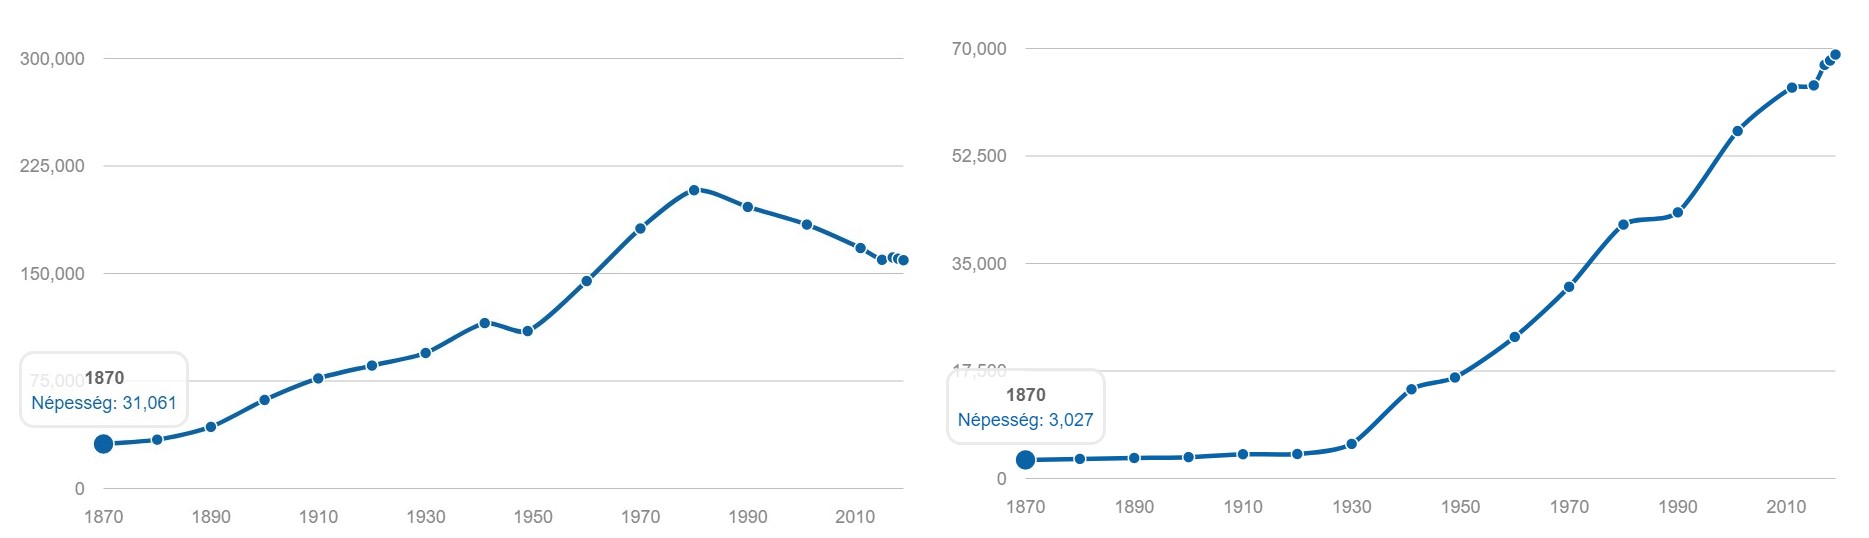 Két véglet - Miskolc  (bal oldali grafikon) és Érd (jobb oldali grafikon) lakosságszámváltozása